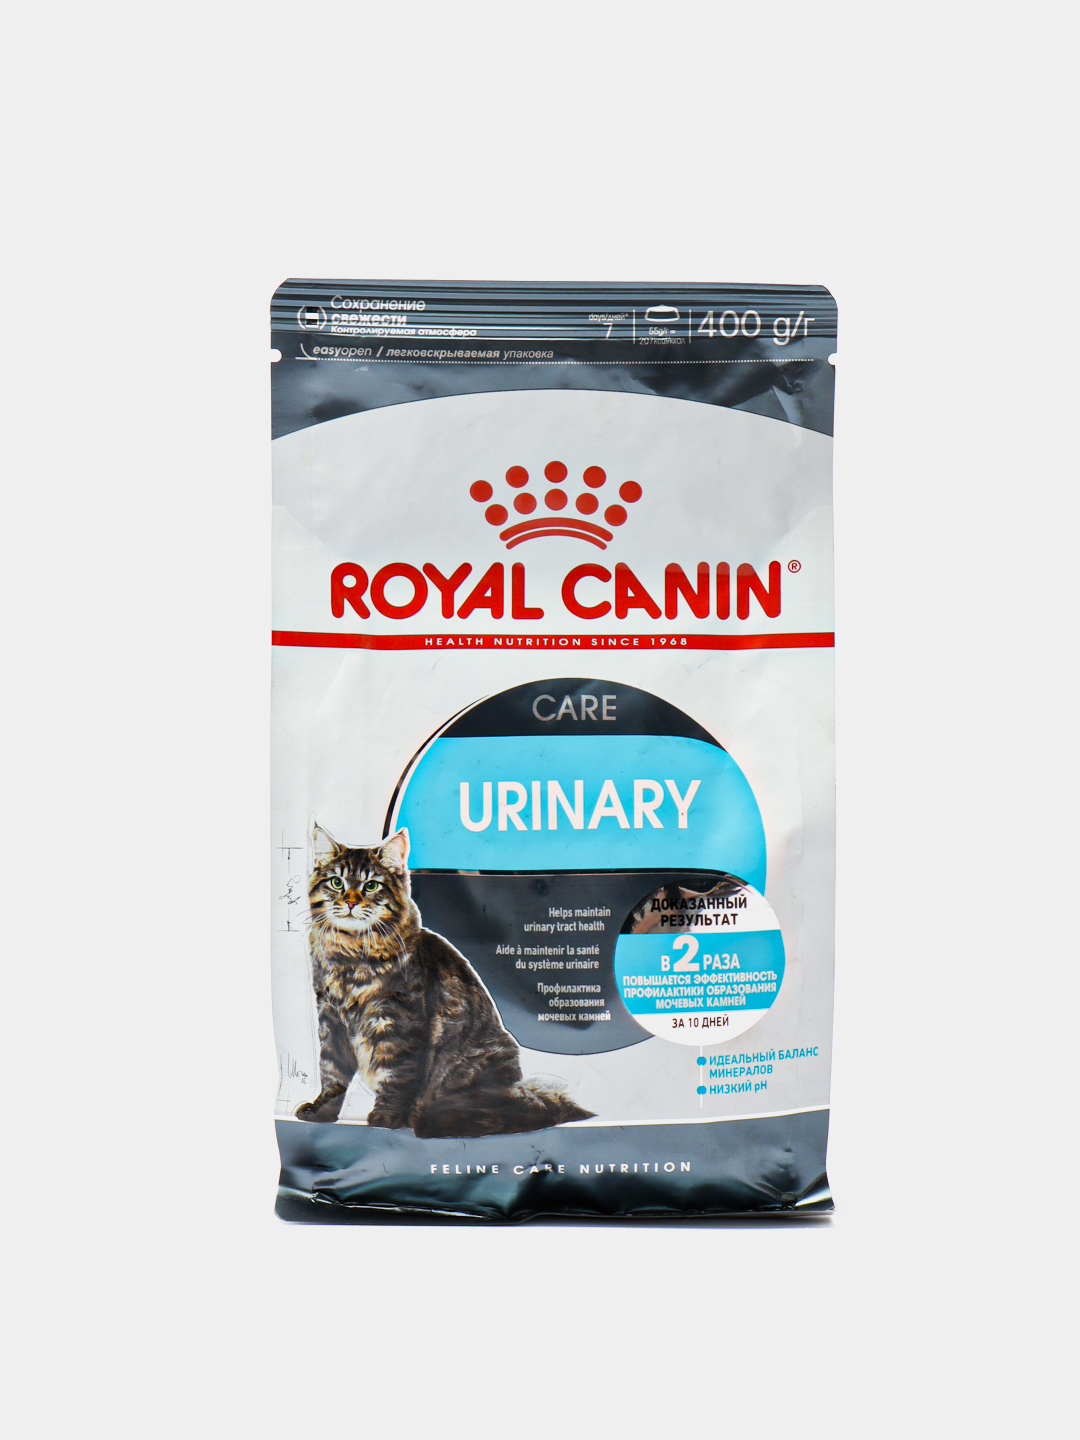 Royal canin urinary care для кошек. Роял Канин Уринари каре. Сухой корм для кошек Royal Canin Urinary. Корм для кошек Уринари Роял. Корм Роял Икс Молл.